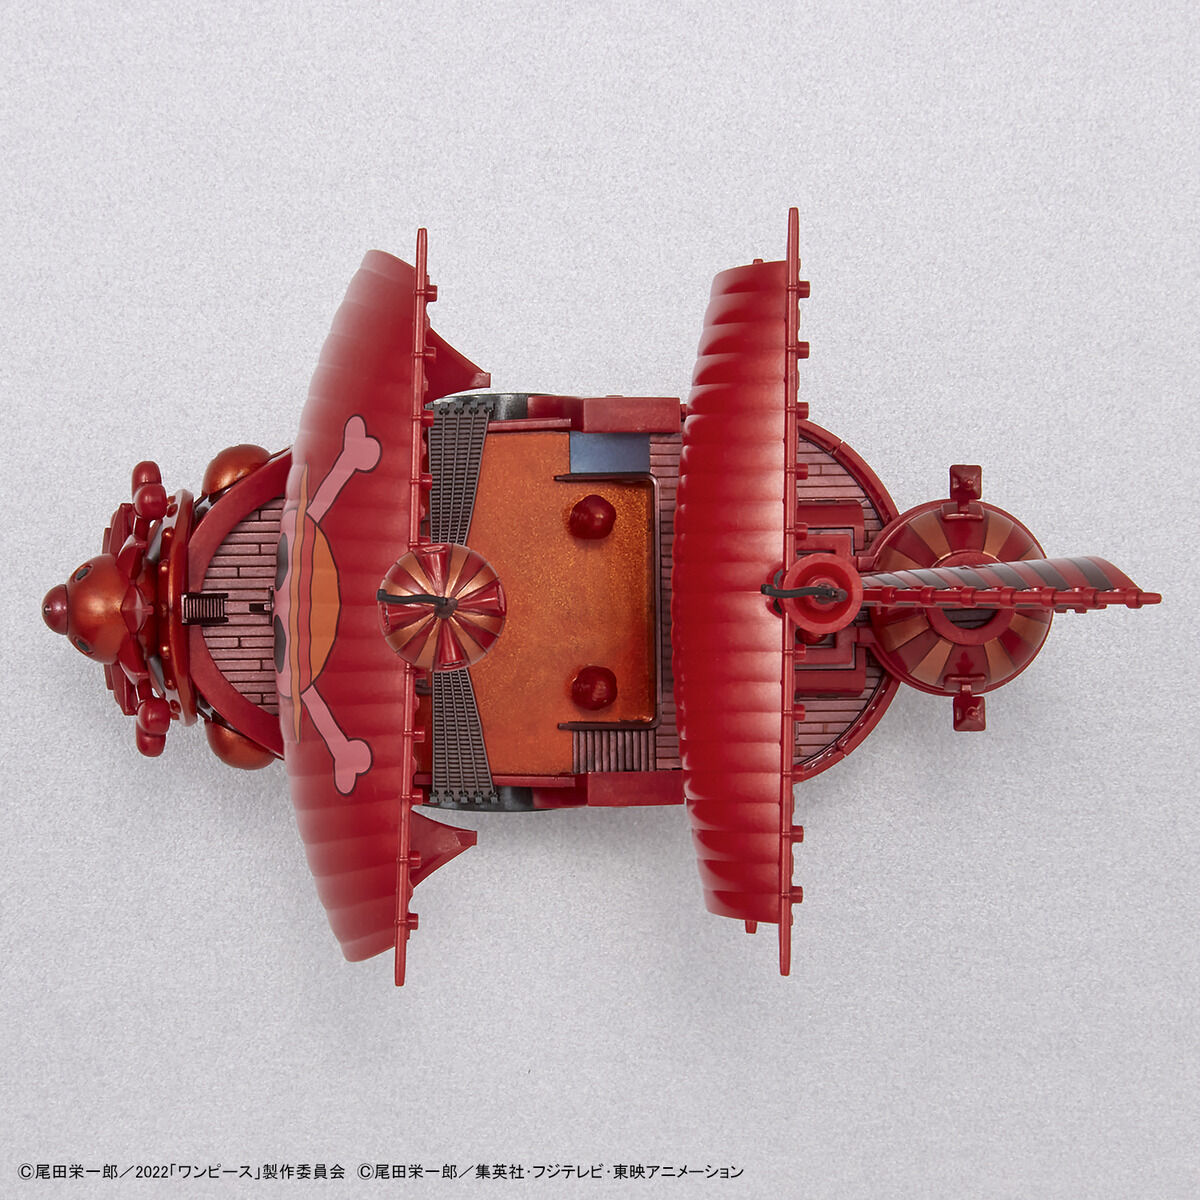 ワンピース偉大なる船コレクション サウザンド・サニー号「FILM RED」公開記念カラーVer. 06